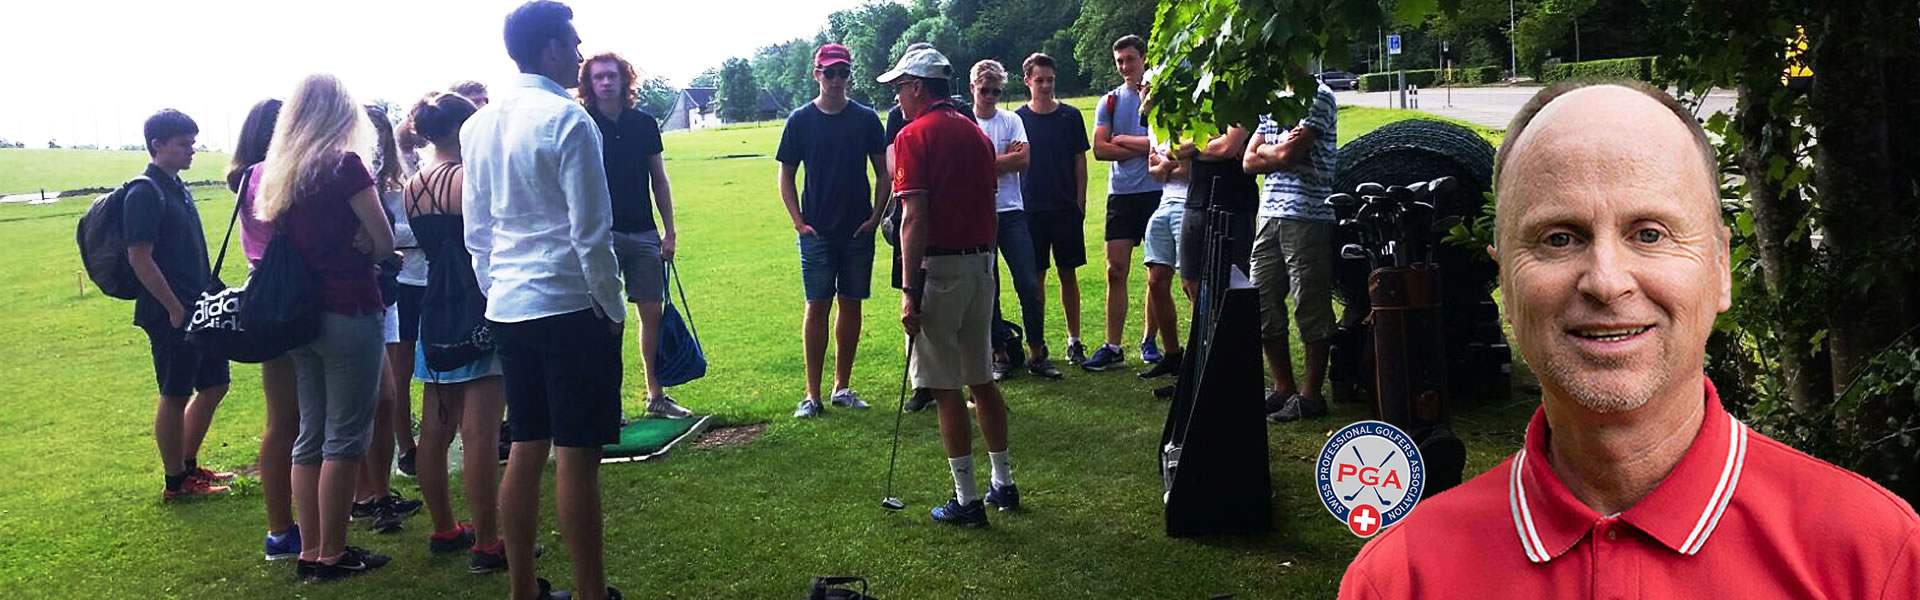 Golf-Unterricht-Golf-Pro-Lehrer-Golfstunden-Zuerich-Thierry-Rombaldi-02